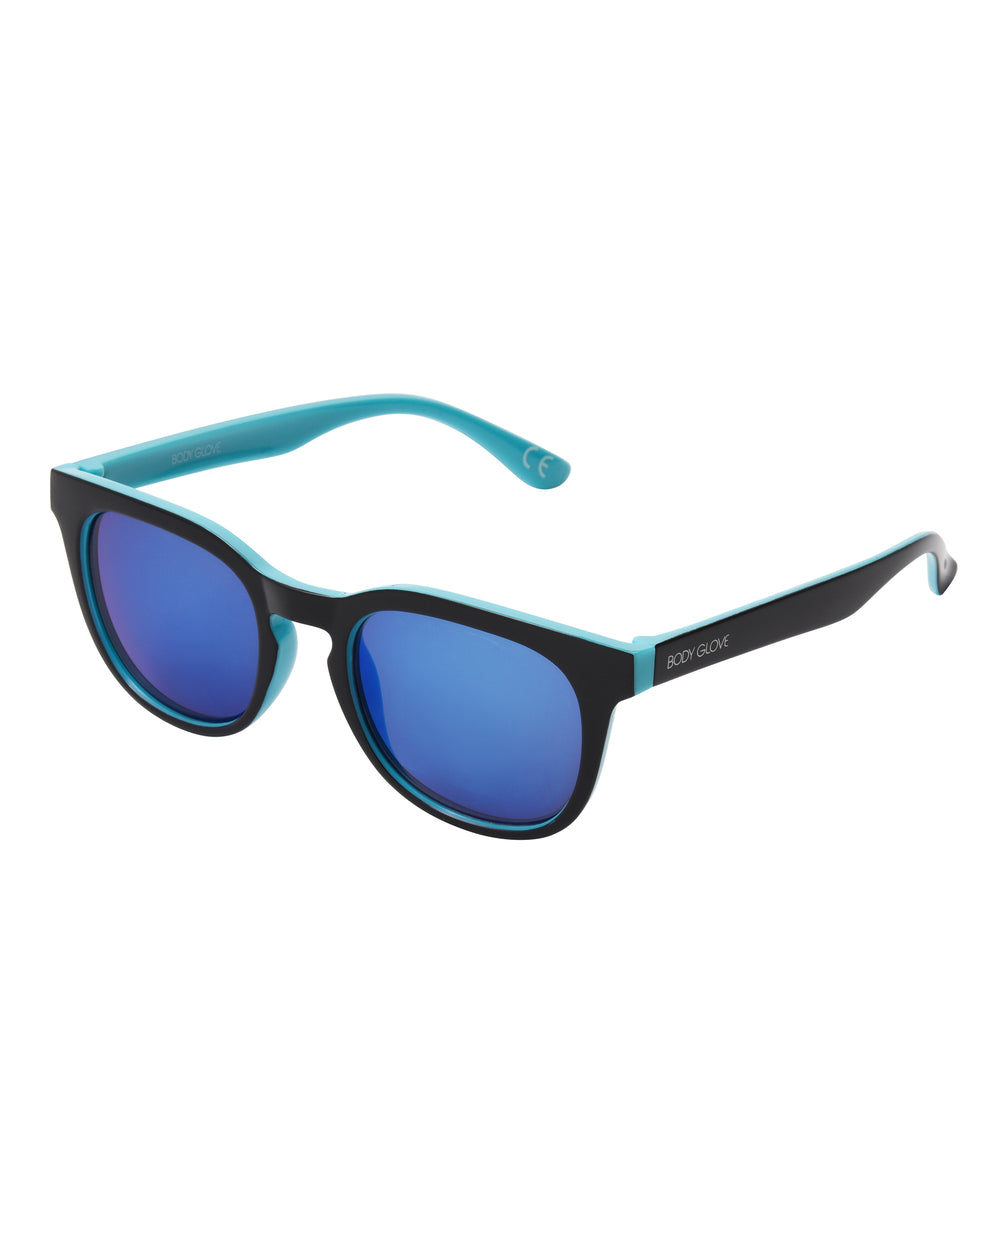 Maxwell Square Sunglasses - Black/Blue